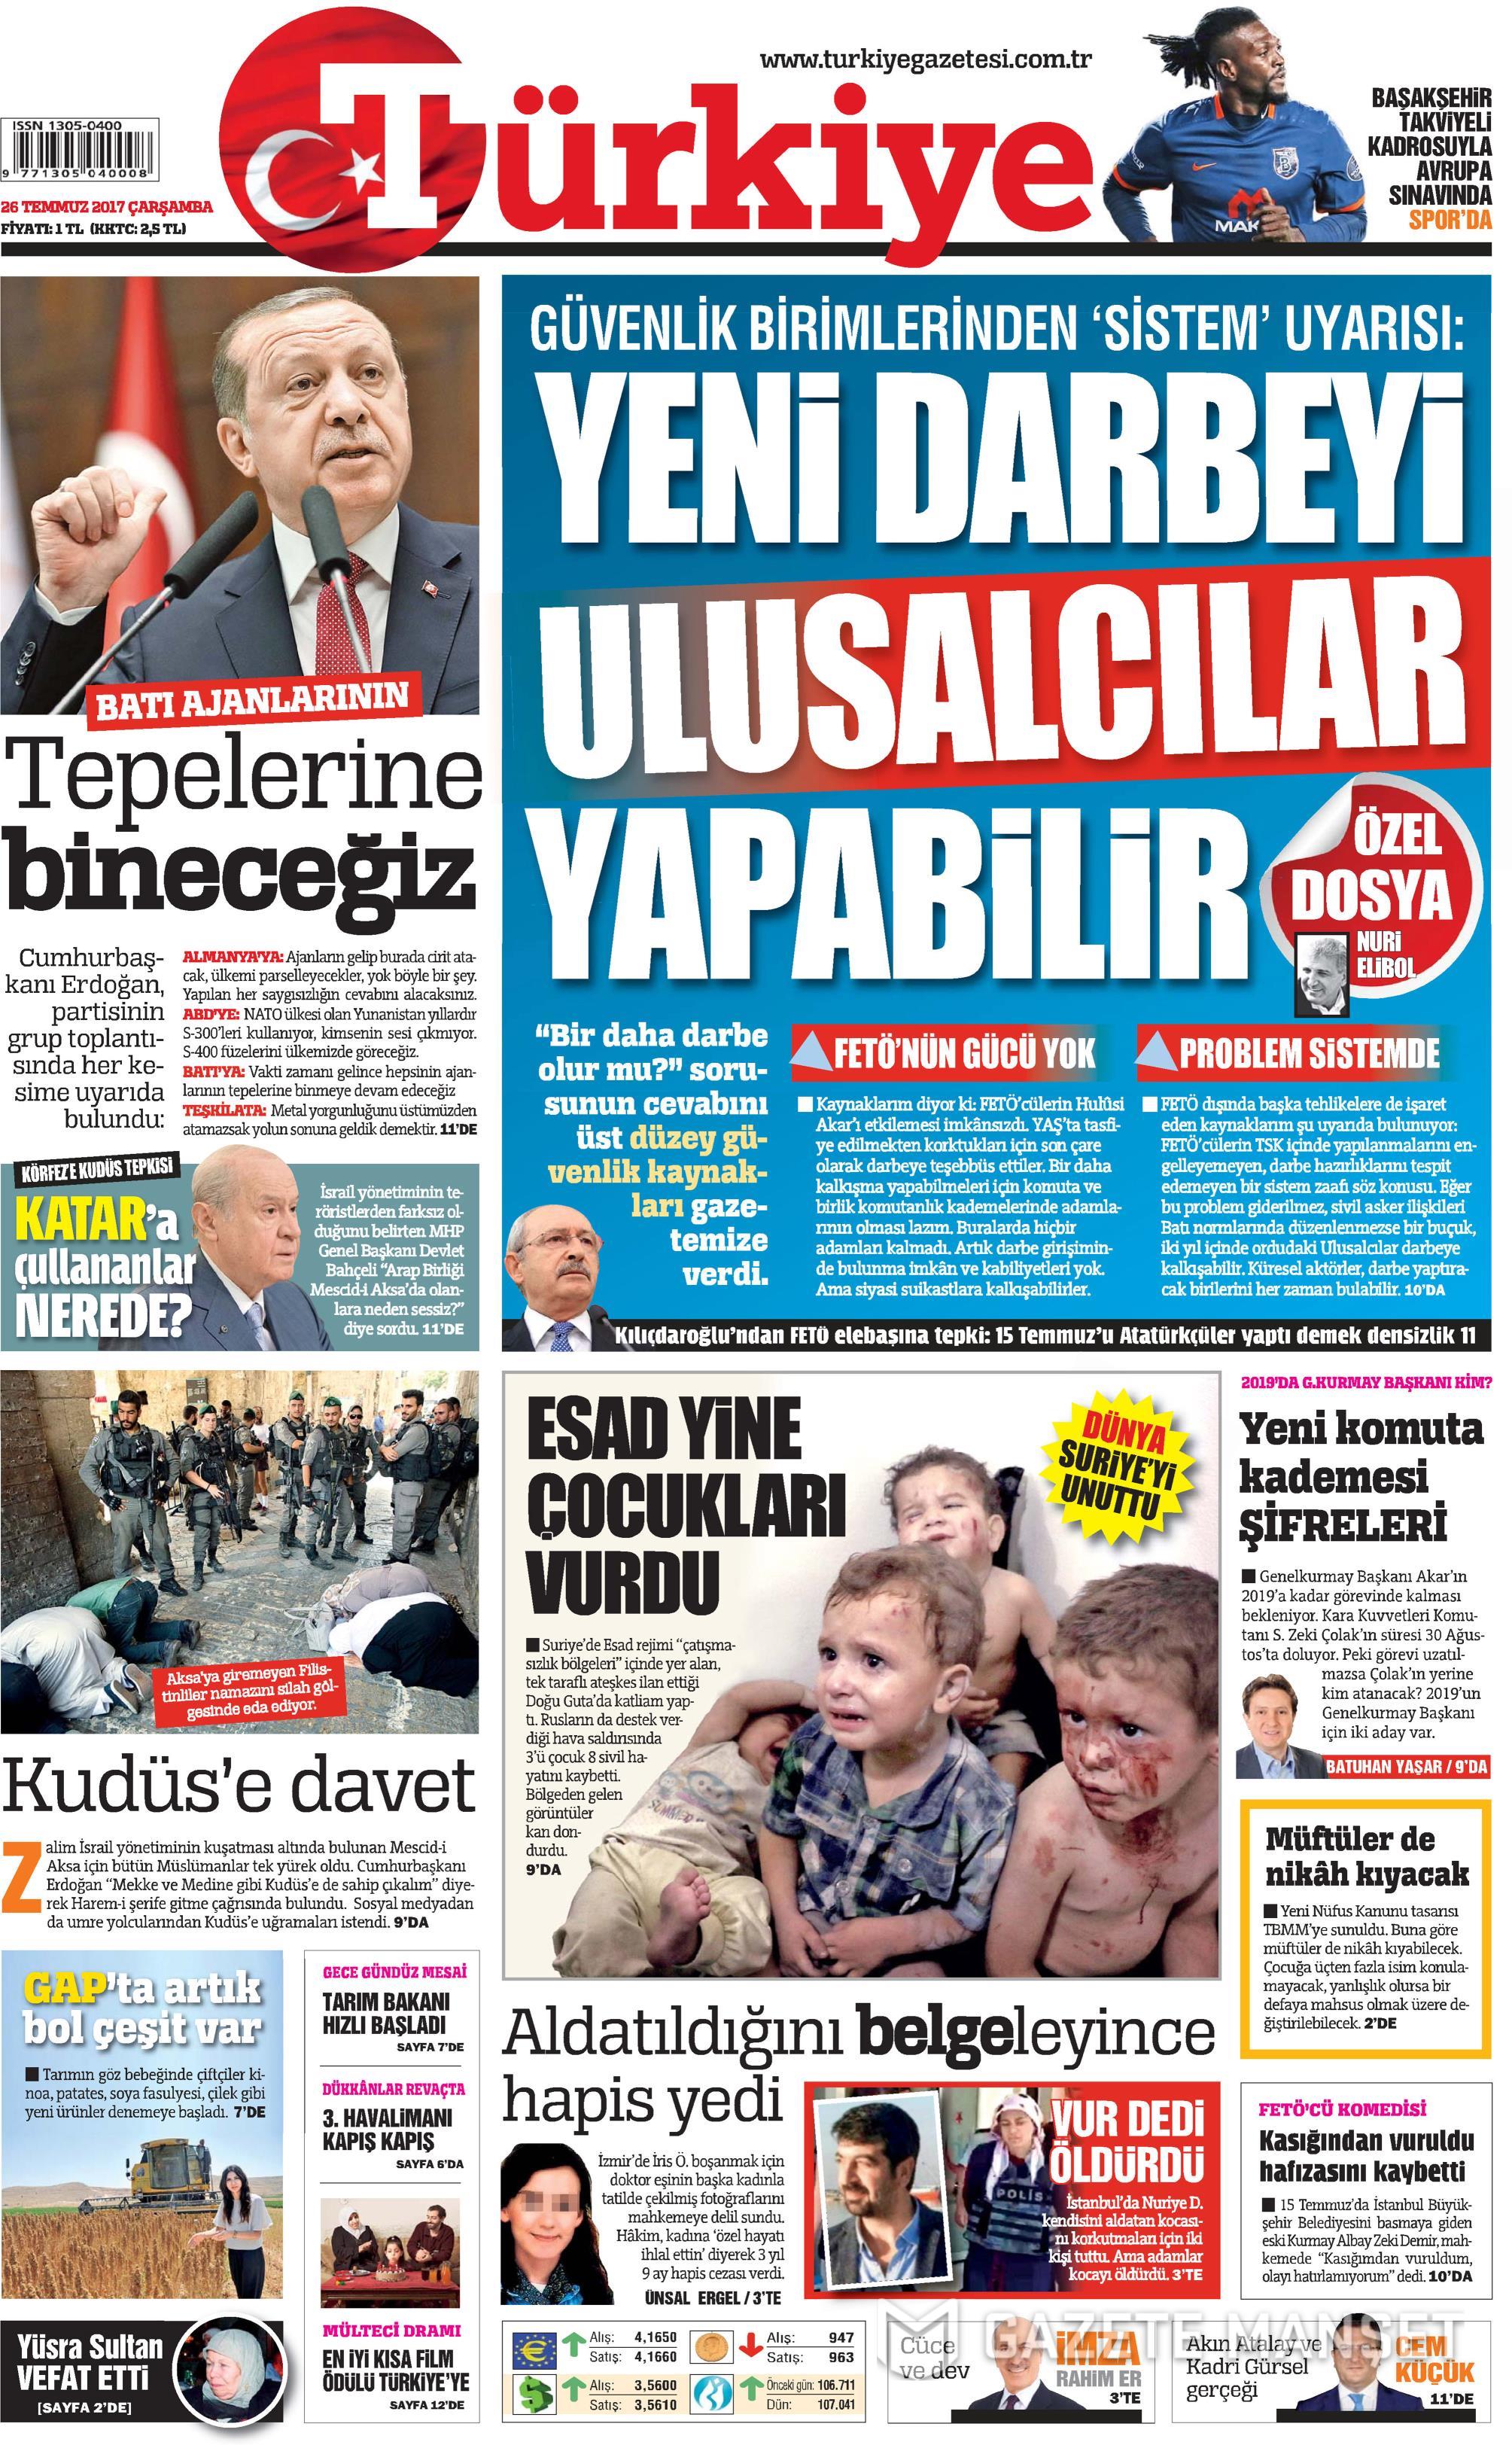 Türkiye Gazetesi:Yeni Darbeyi Ulusalcılar yapabilir